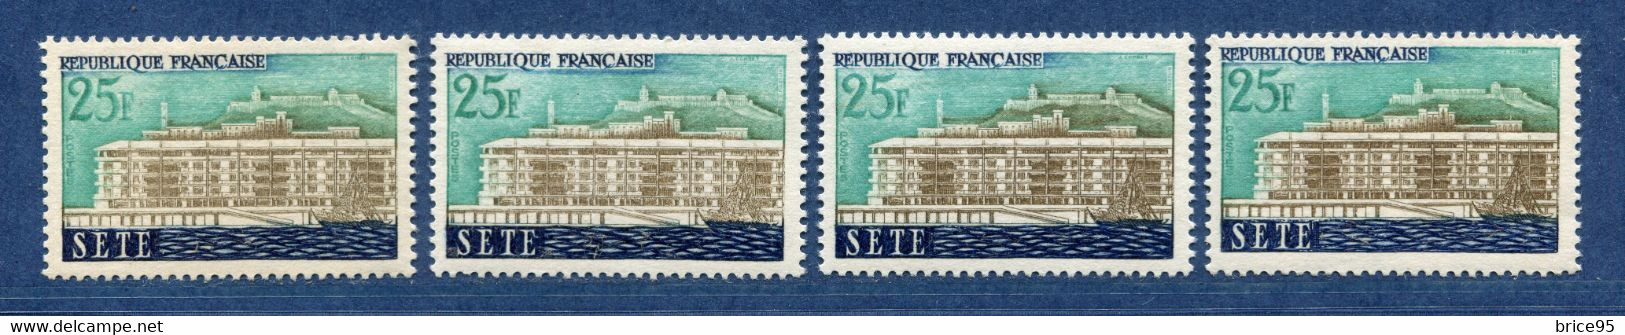 ⭐ France - Variété - YT N° 1155 - Couleurs - Pétouille - Neuf Sans Charnière - 1958 ⭐ - Ongebruikt